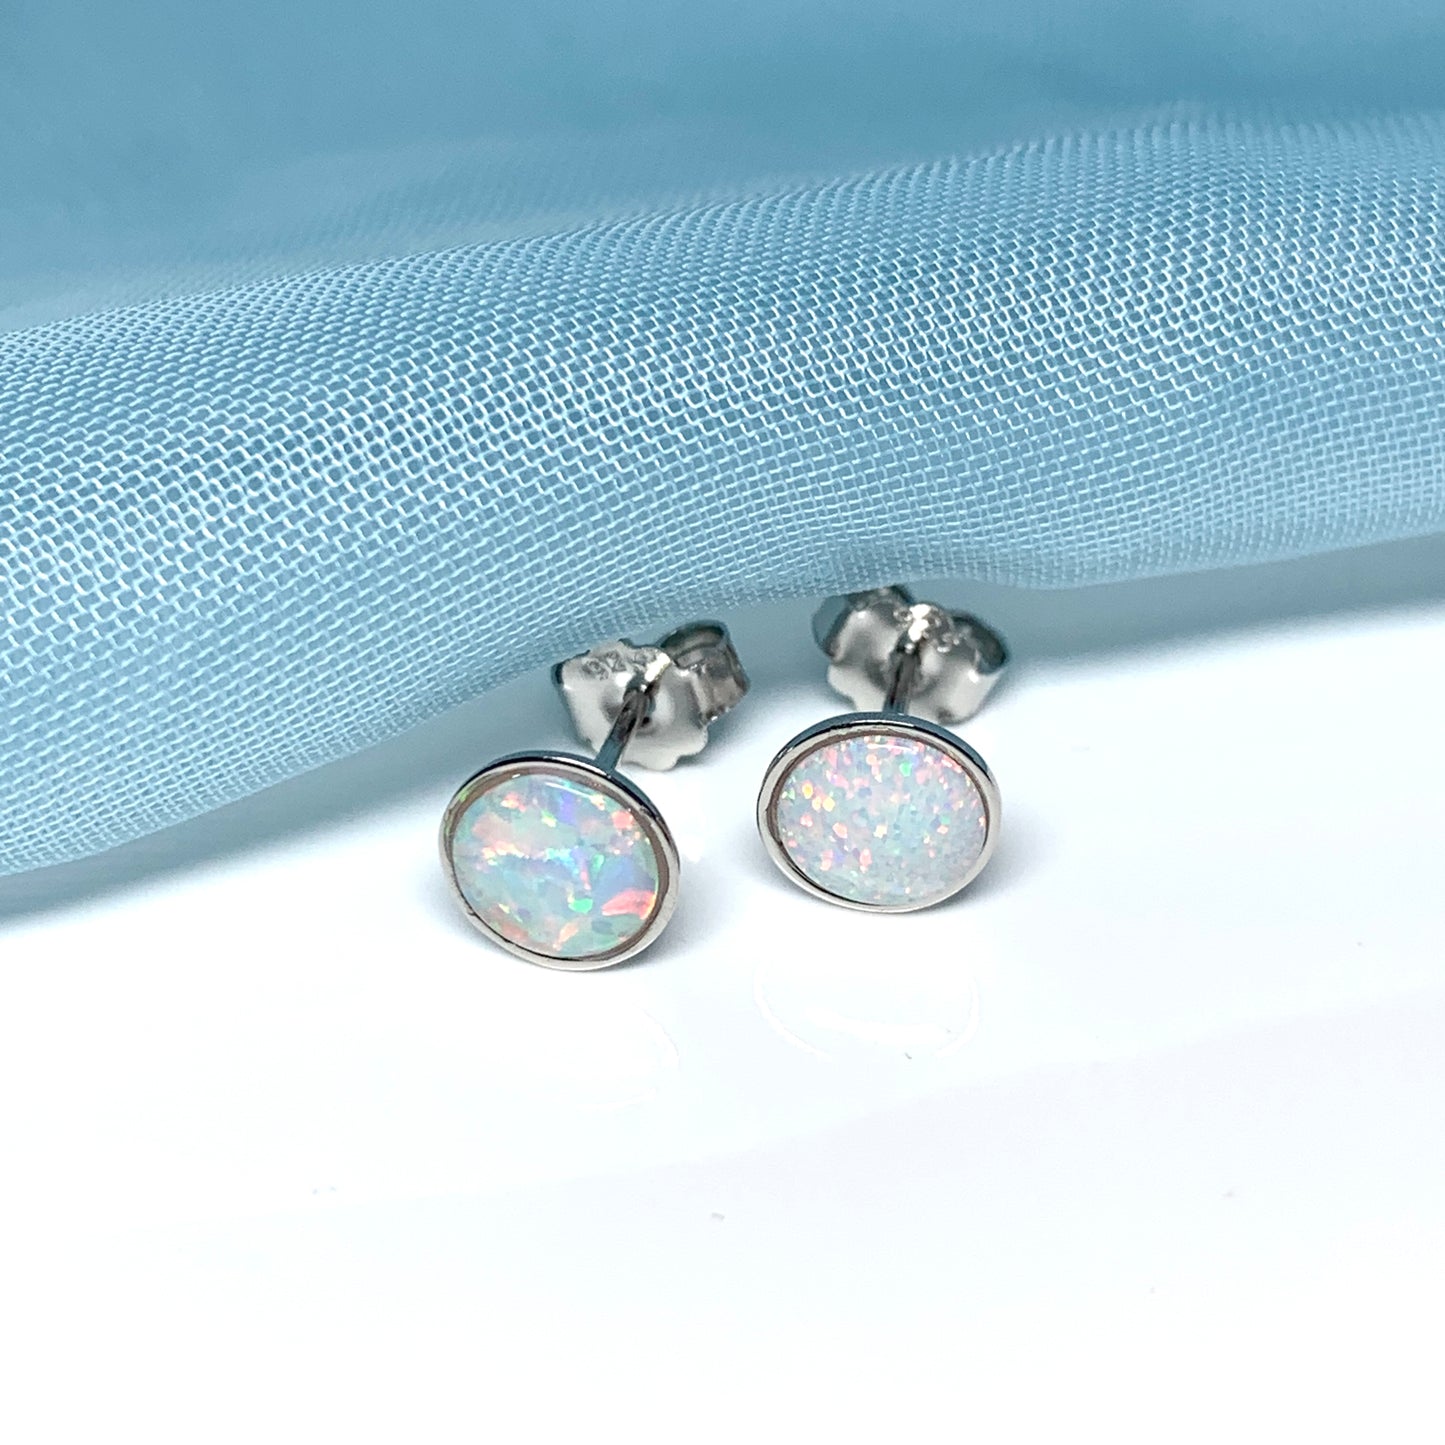 Sterling silver round opal stud earrings